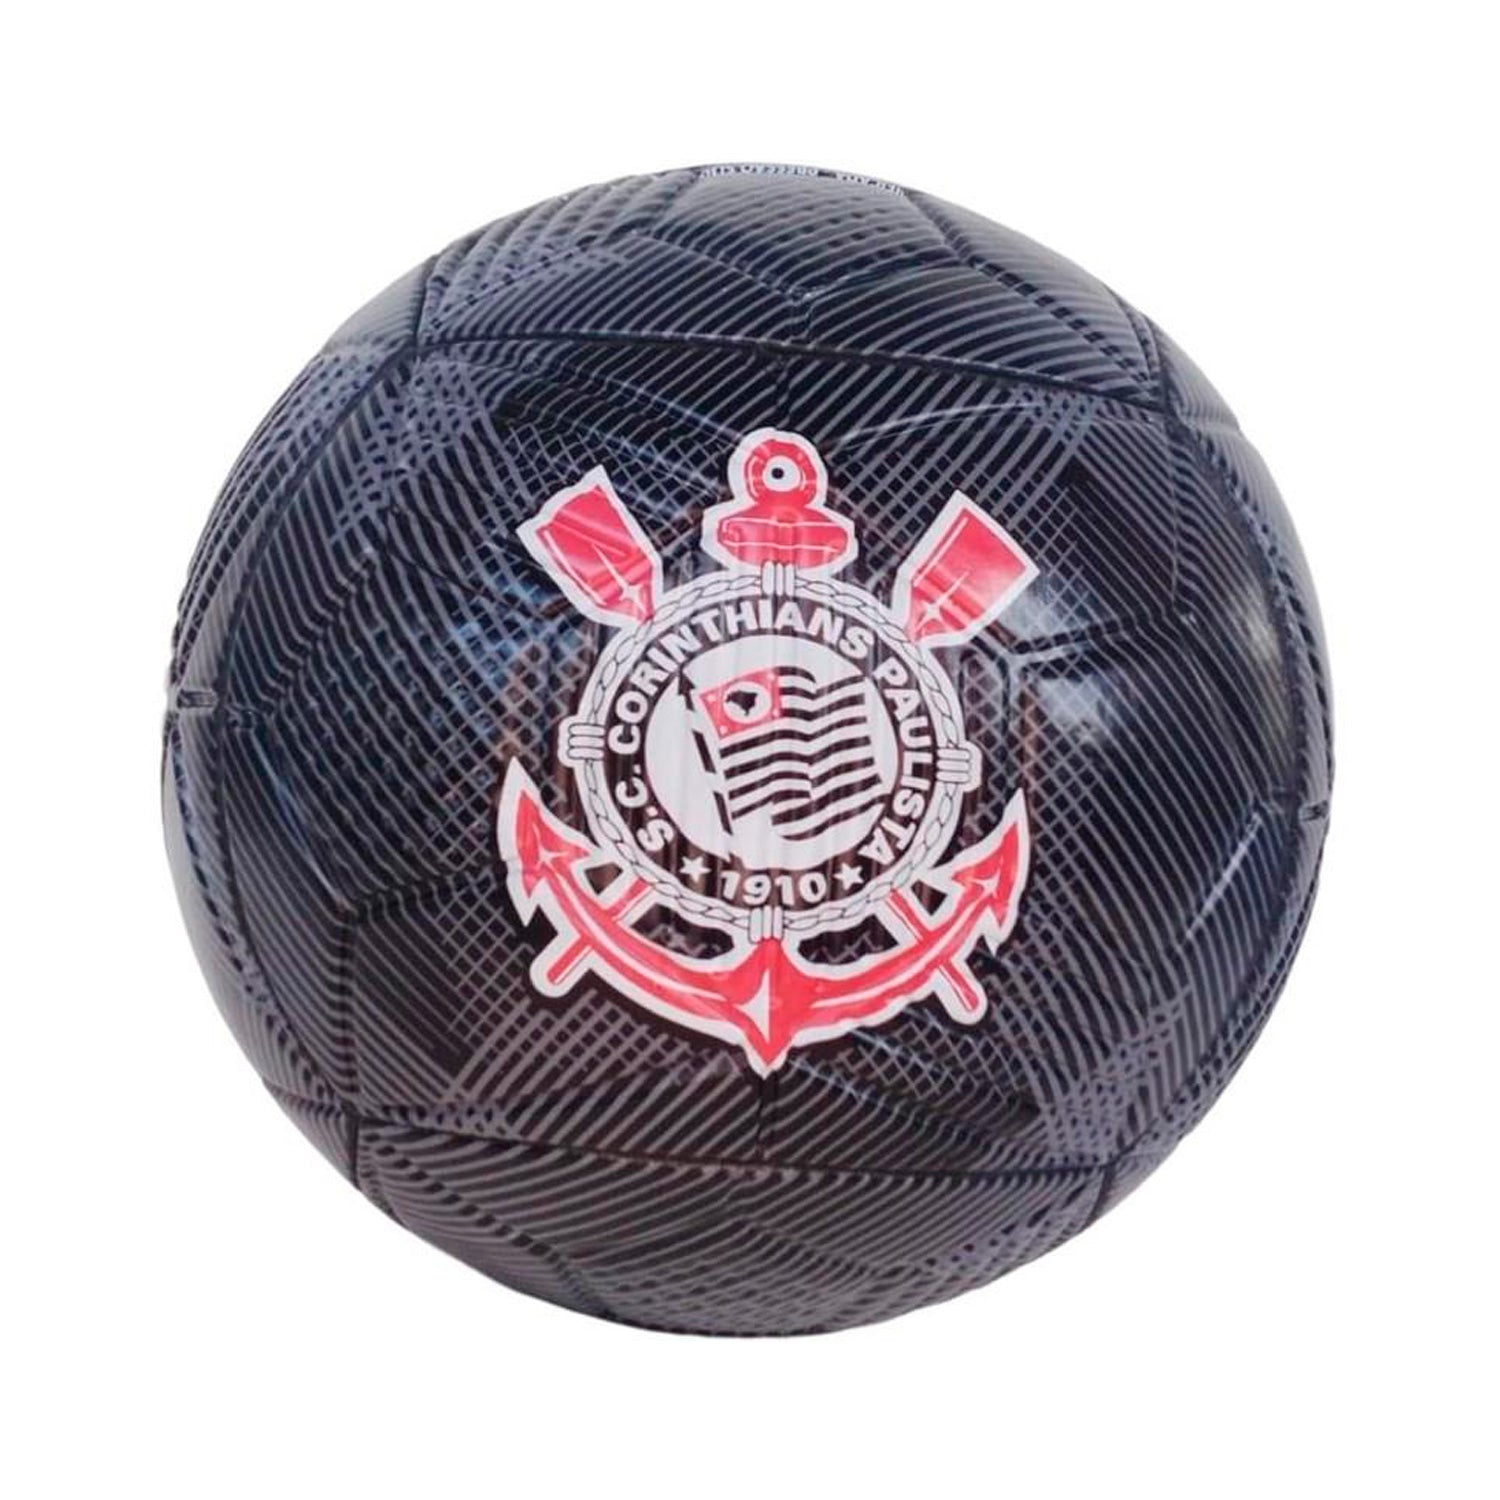 Bola de Futebol De Campo Corinthians 568 Nº 5 - Futebol e Magia